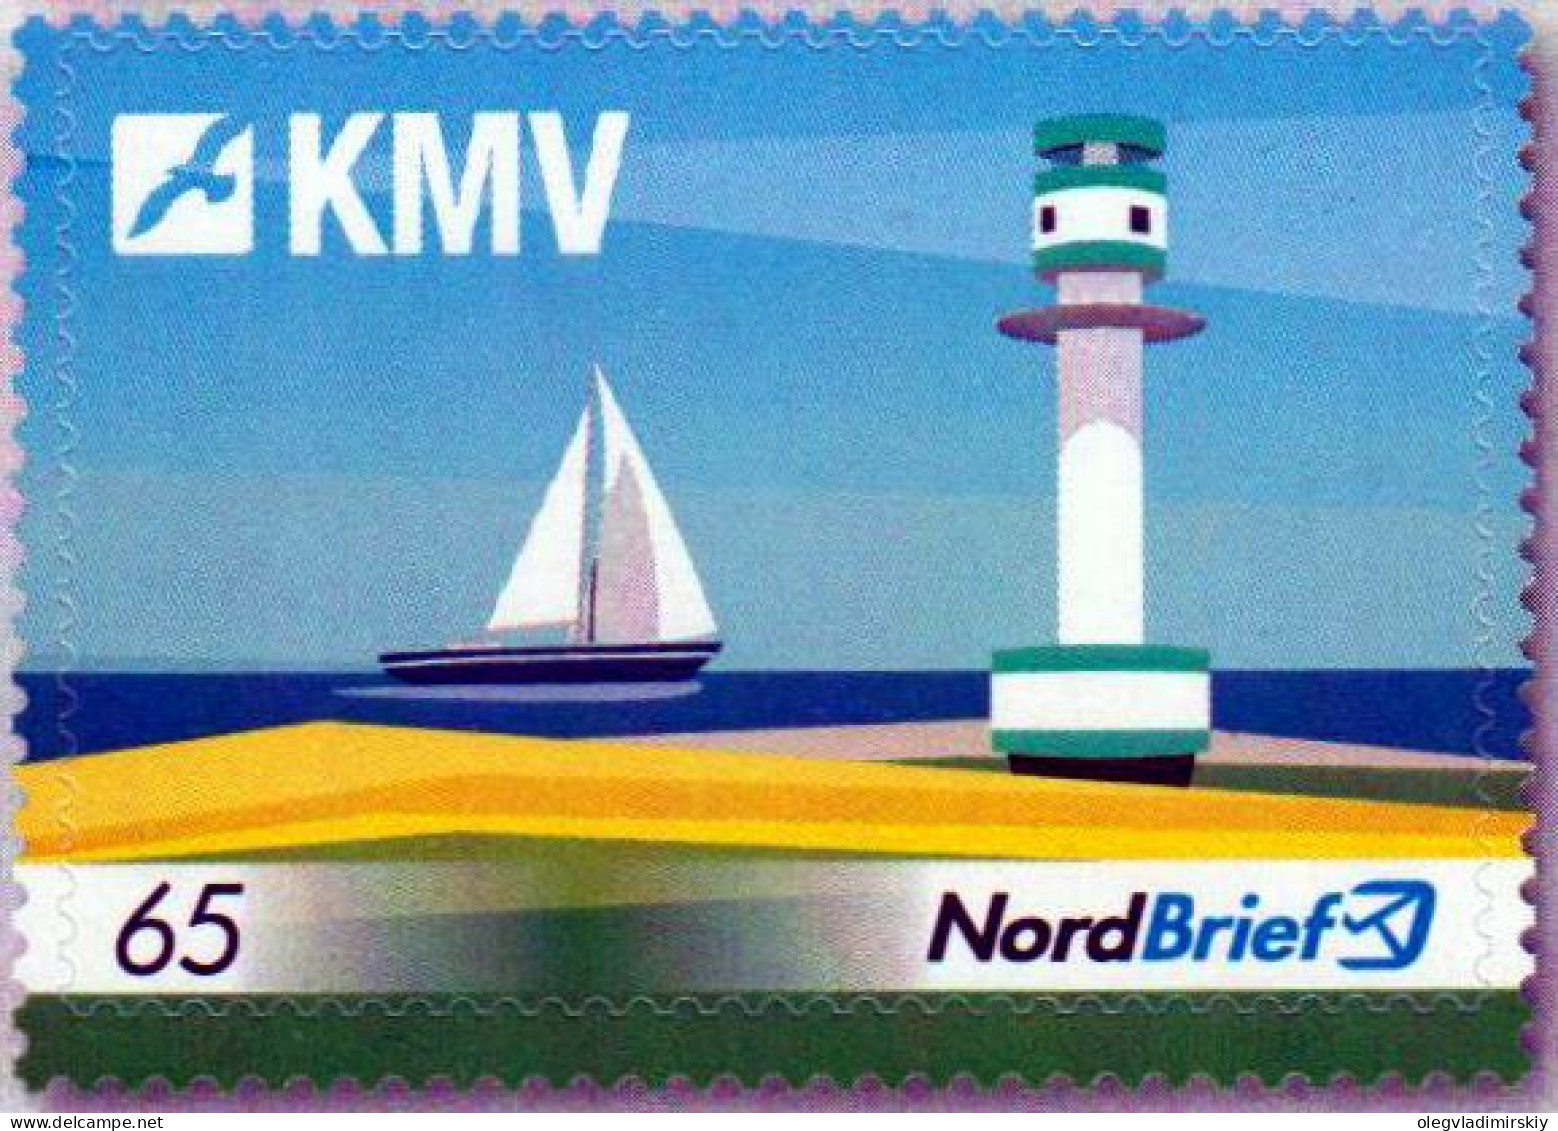 Germany Deutschland Allemagne 2017 Kiel Magazine Publisher Lighthouse Sailship NordBrief Stamp MNH - Privé- & Lokale Post